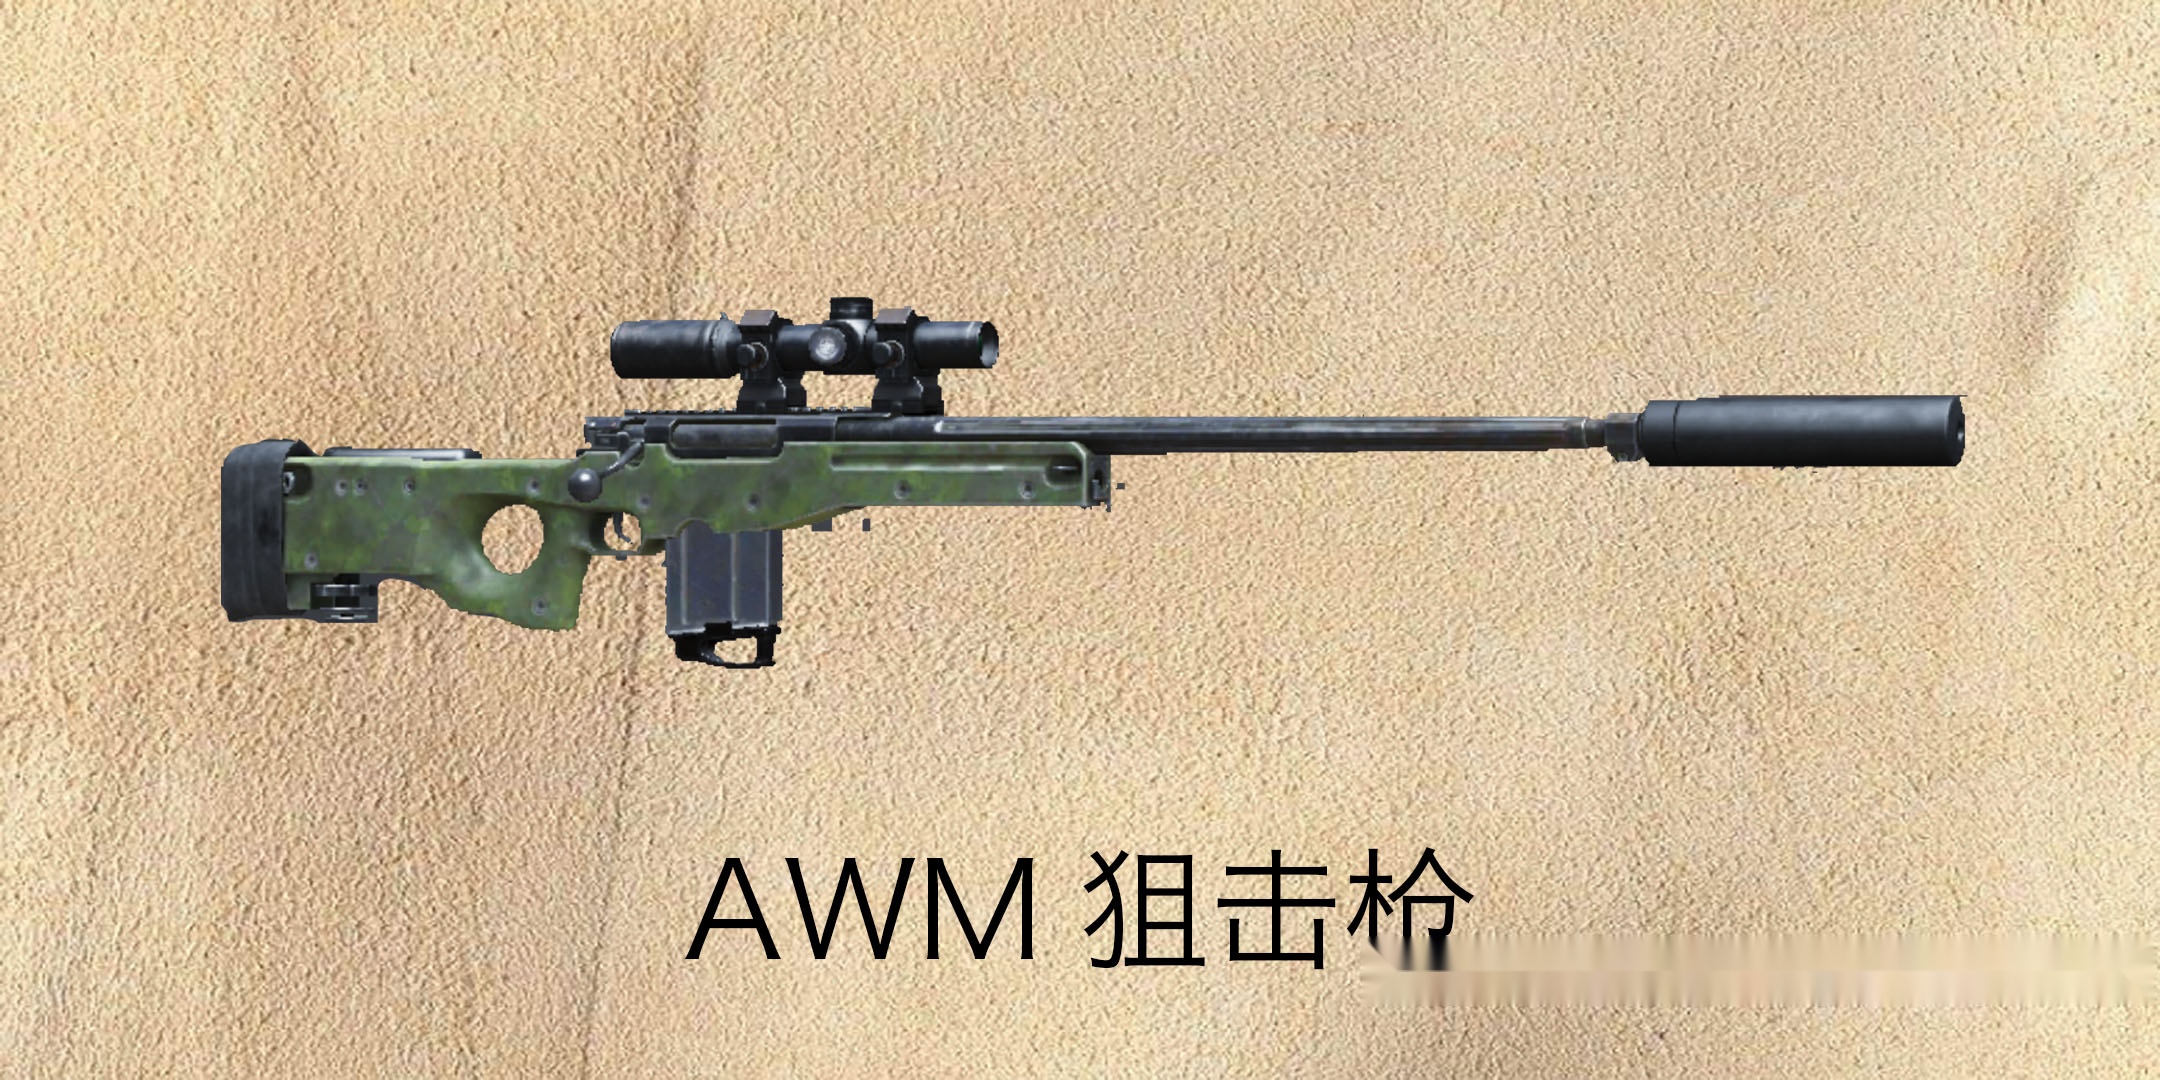 awm狙击枪的结构组成图片